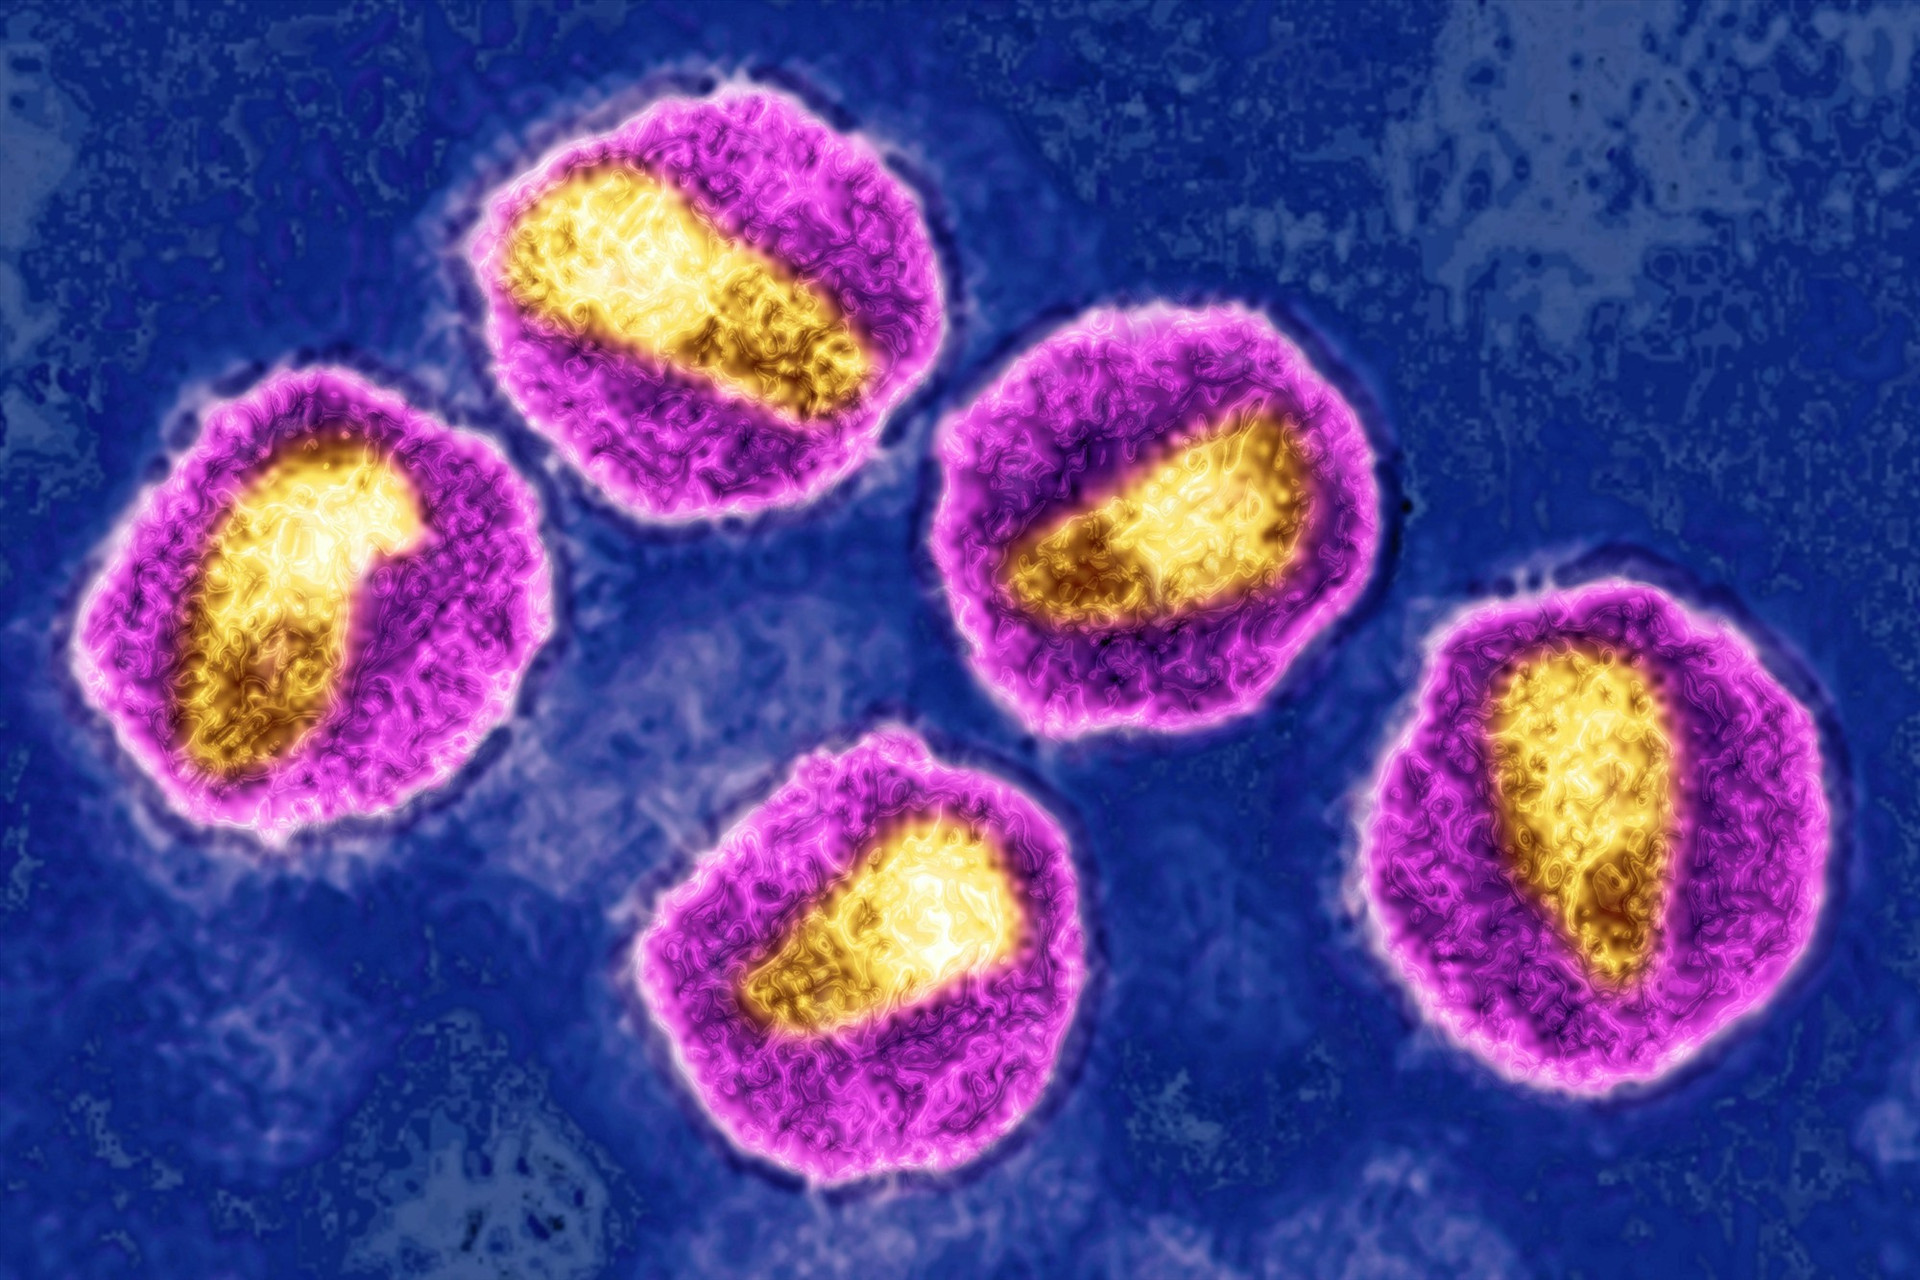 Hình ảnh vi rút HIV thông qua kính hiển vi điện tử. Ảnh:gettyimages